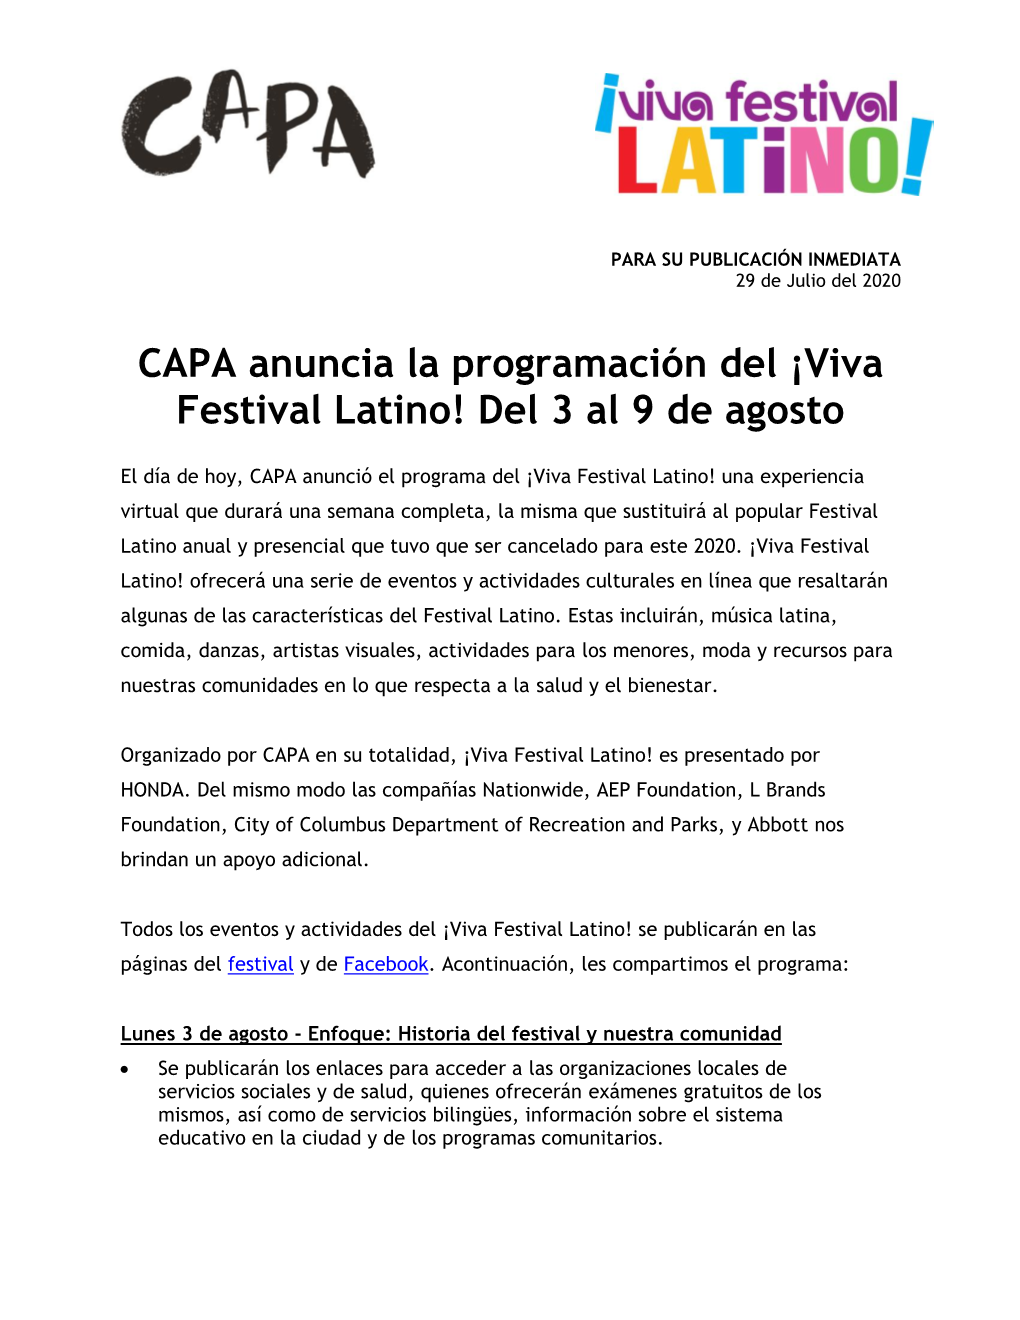 CAPA Anuncia La Programación Del ¡Viva Festival Latino! Del 3 Al 9 De Agosto